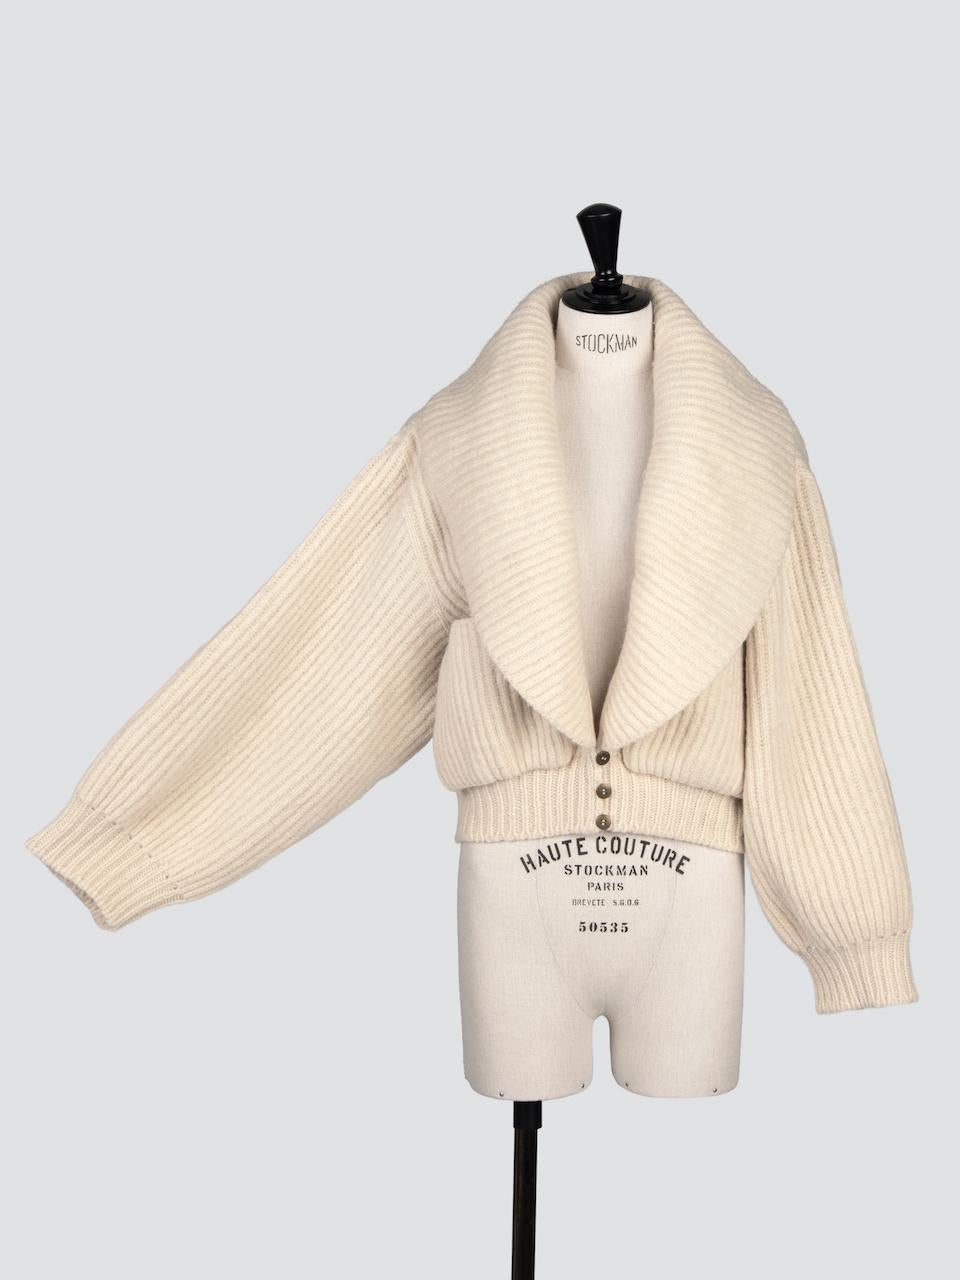 Beige Azzedine ALAÏA Documented Ivory Wool Knit Runway Cardigan Jacket, F/W 1984-85